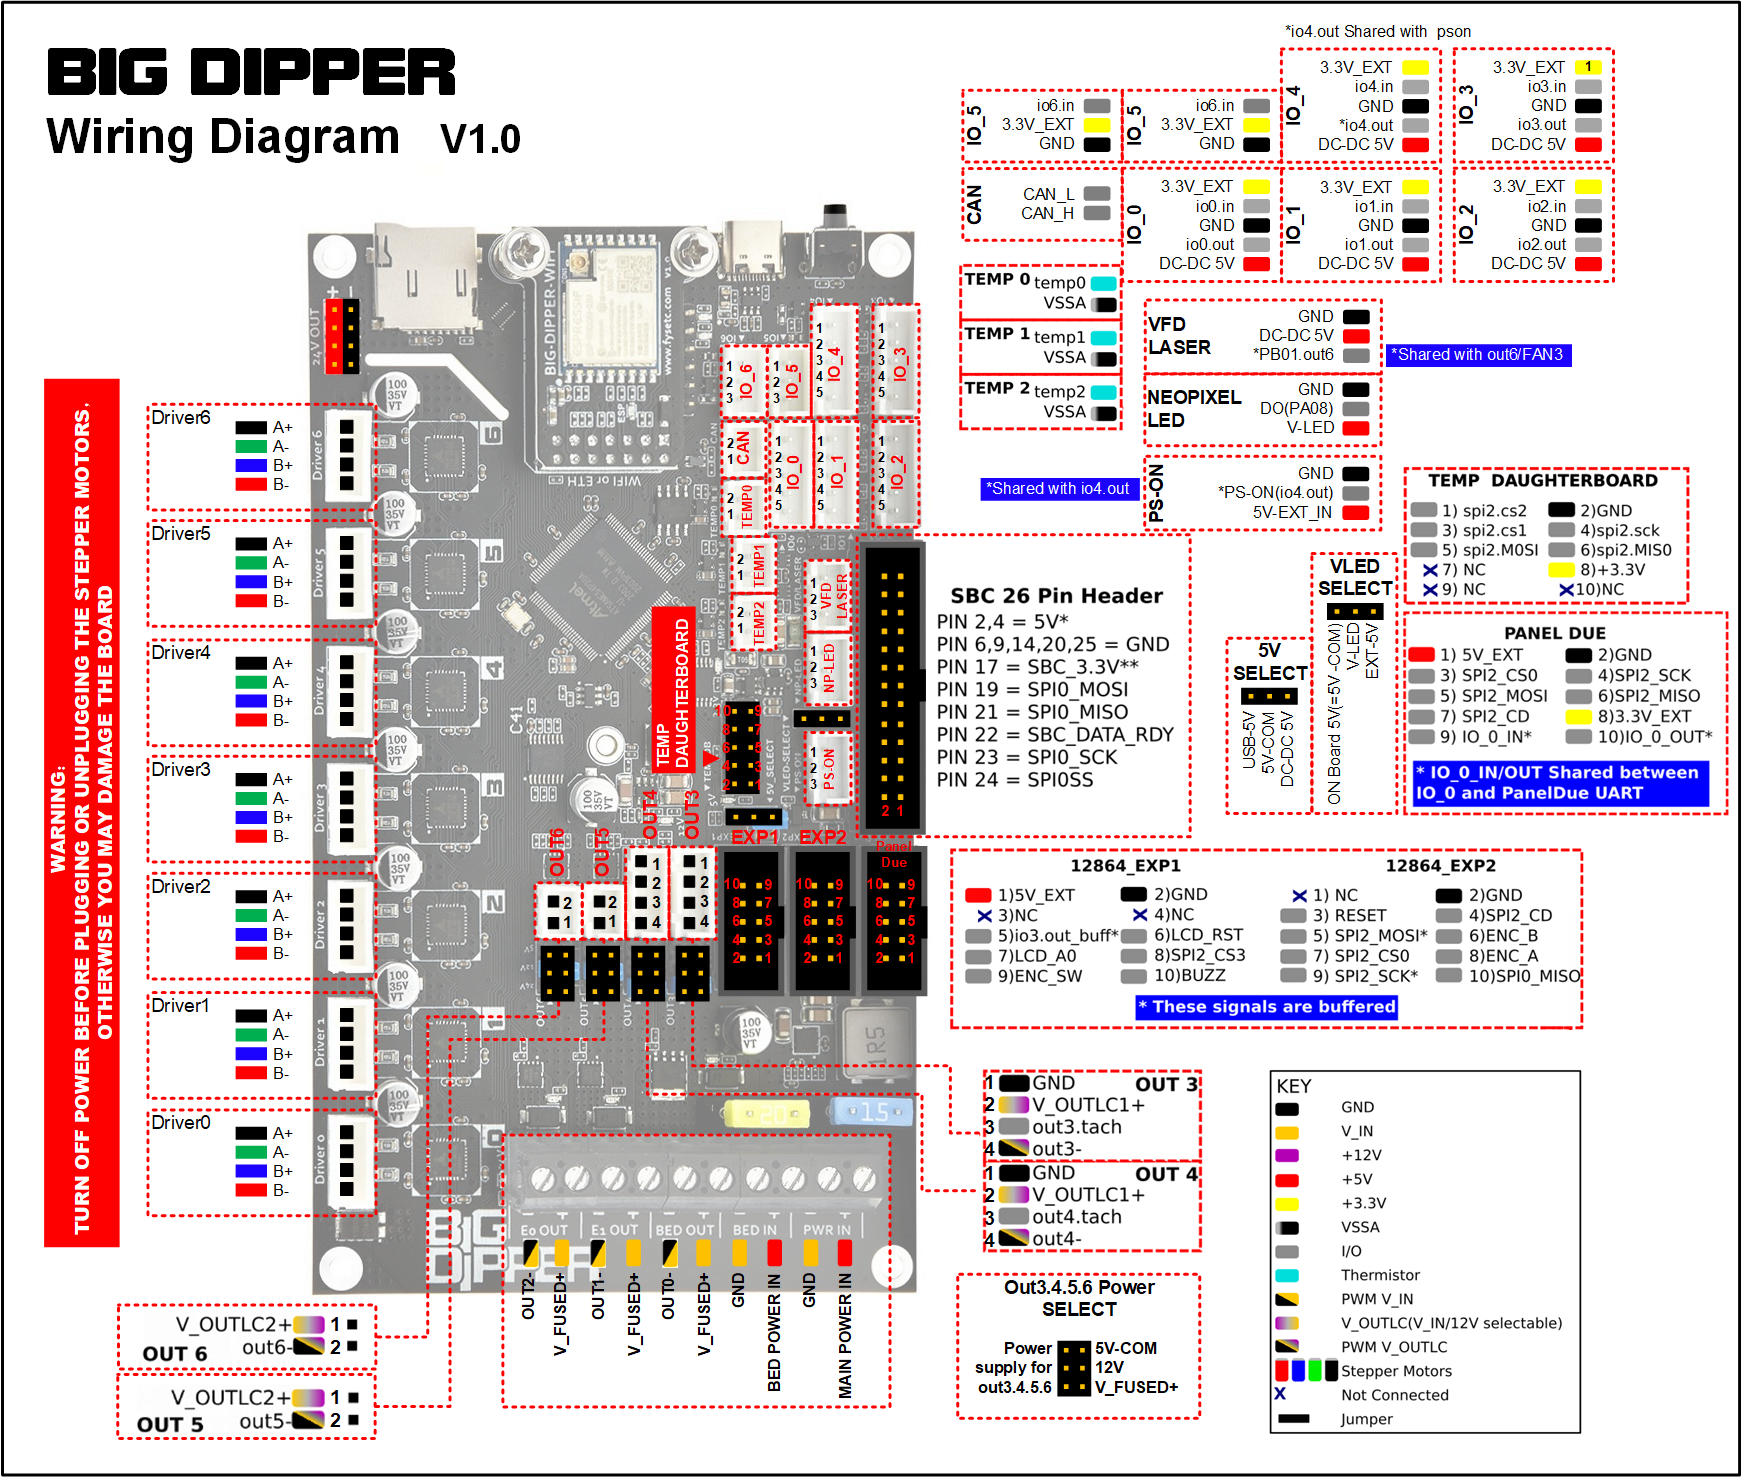 Big-Dipper Wiring